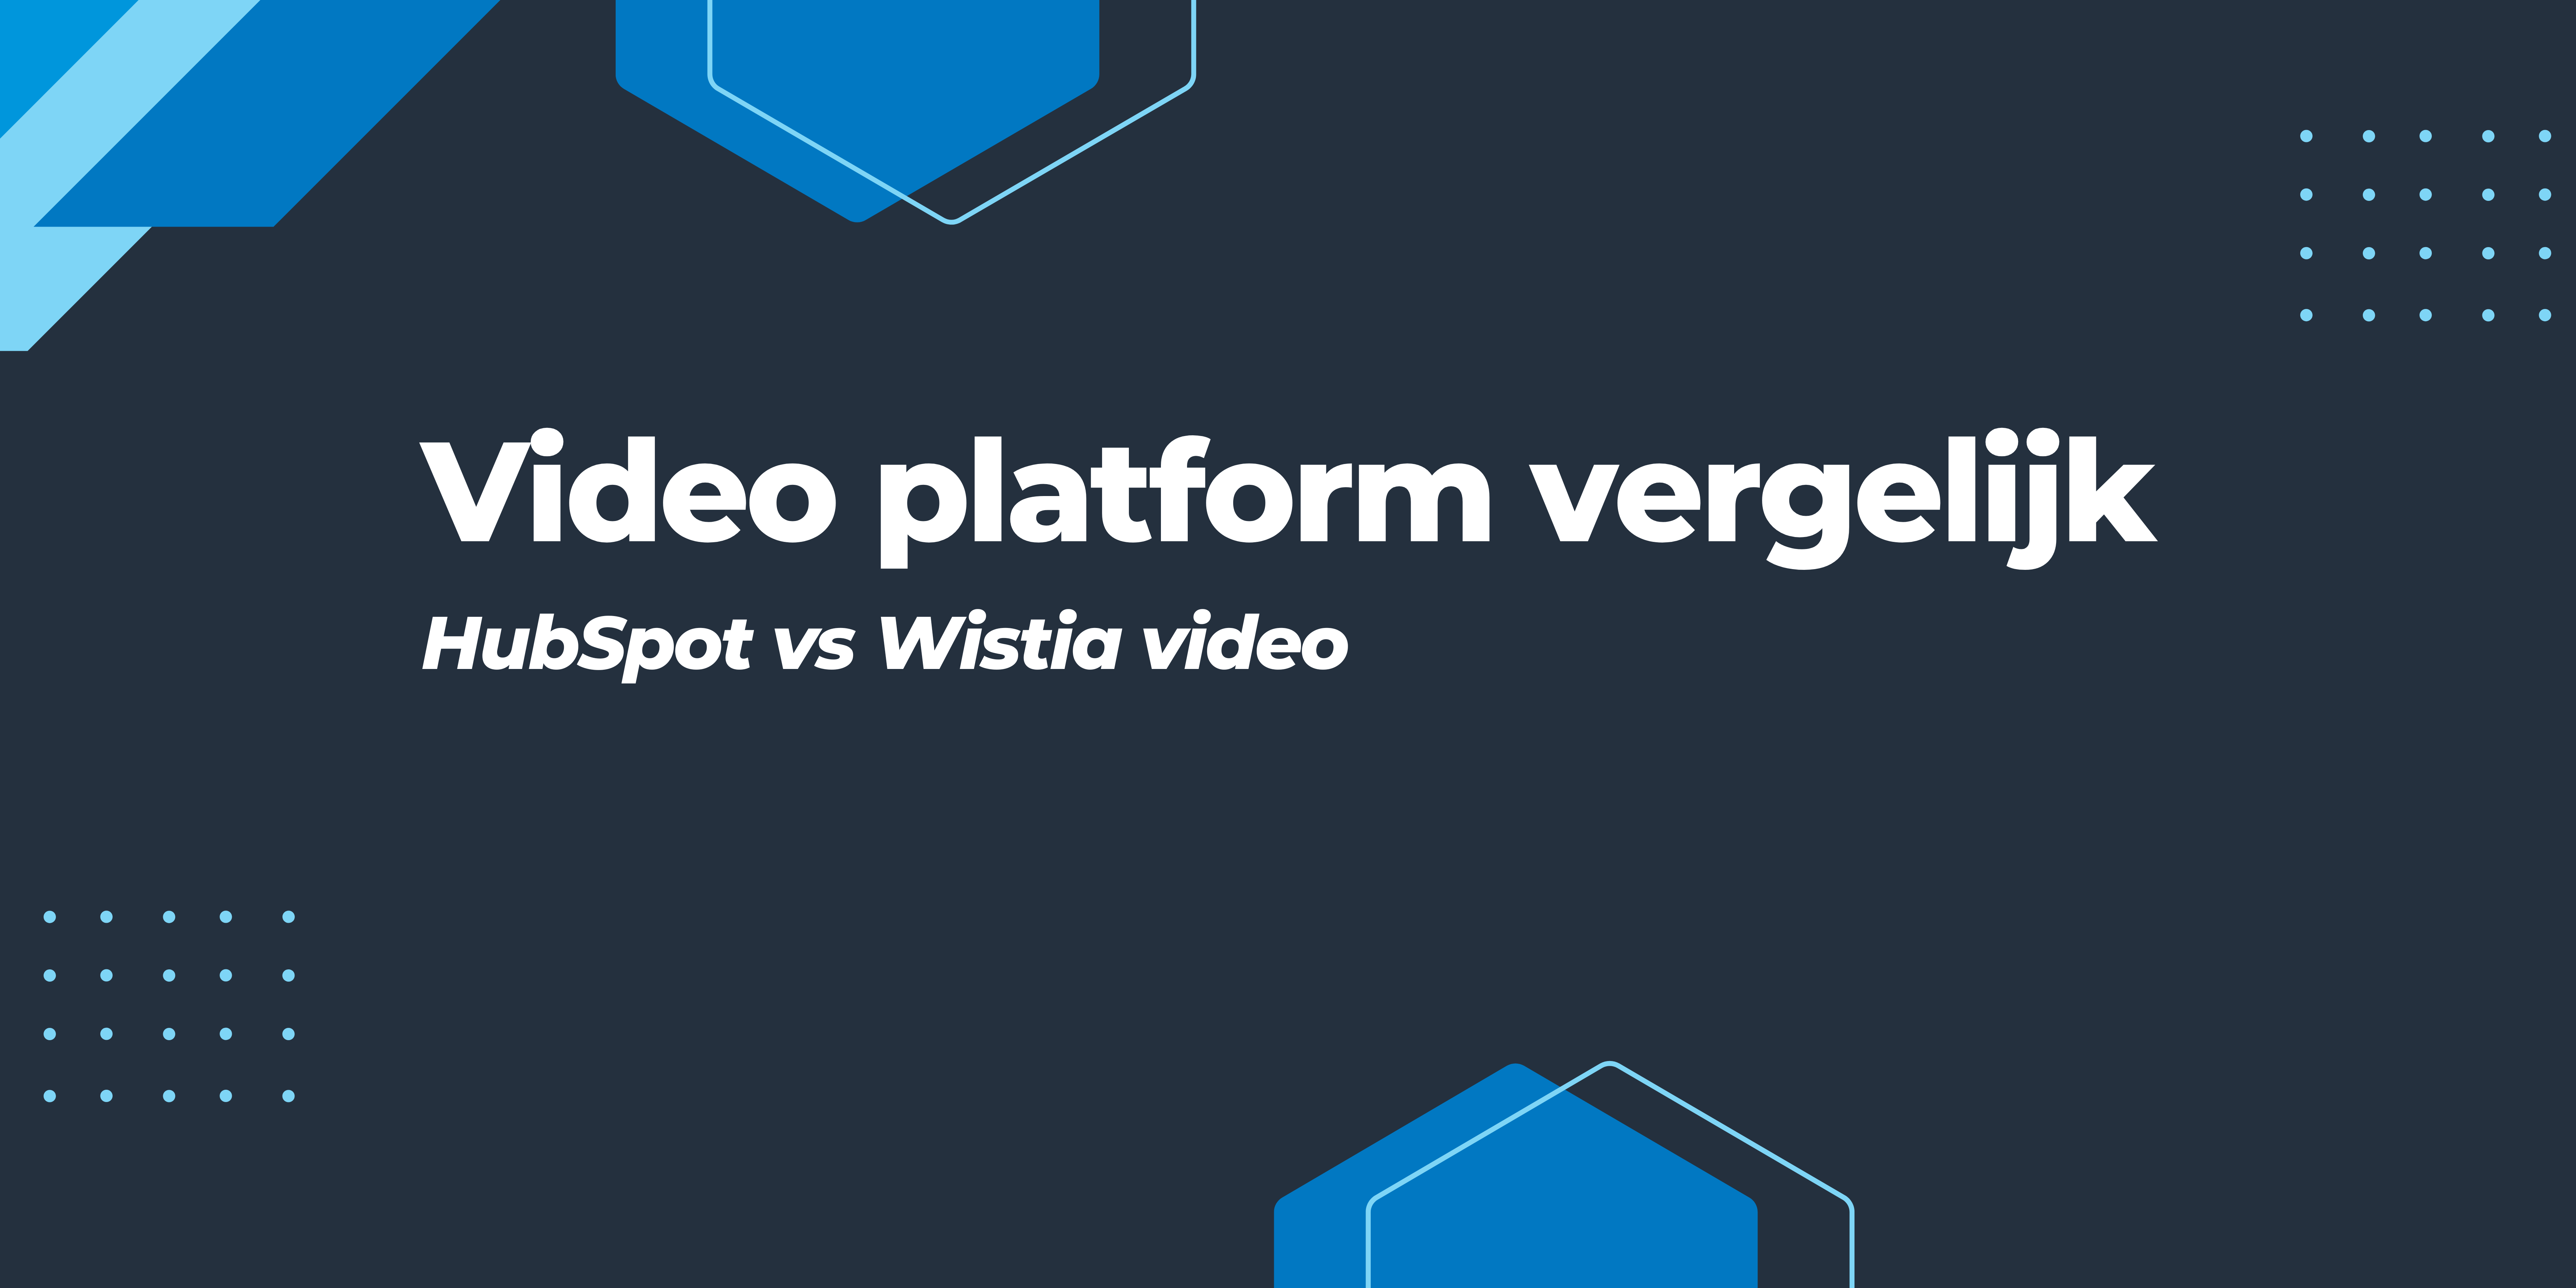 Video platform